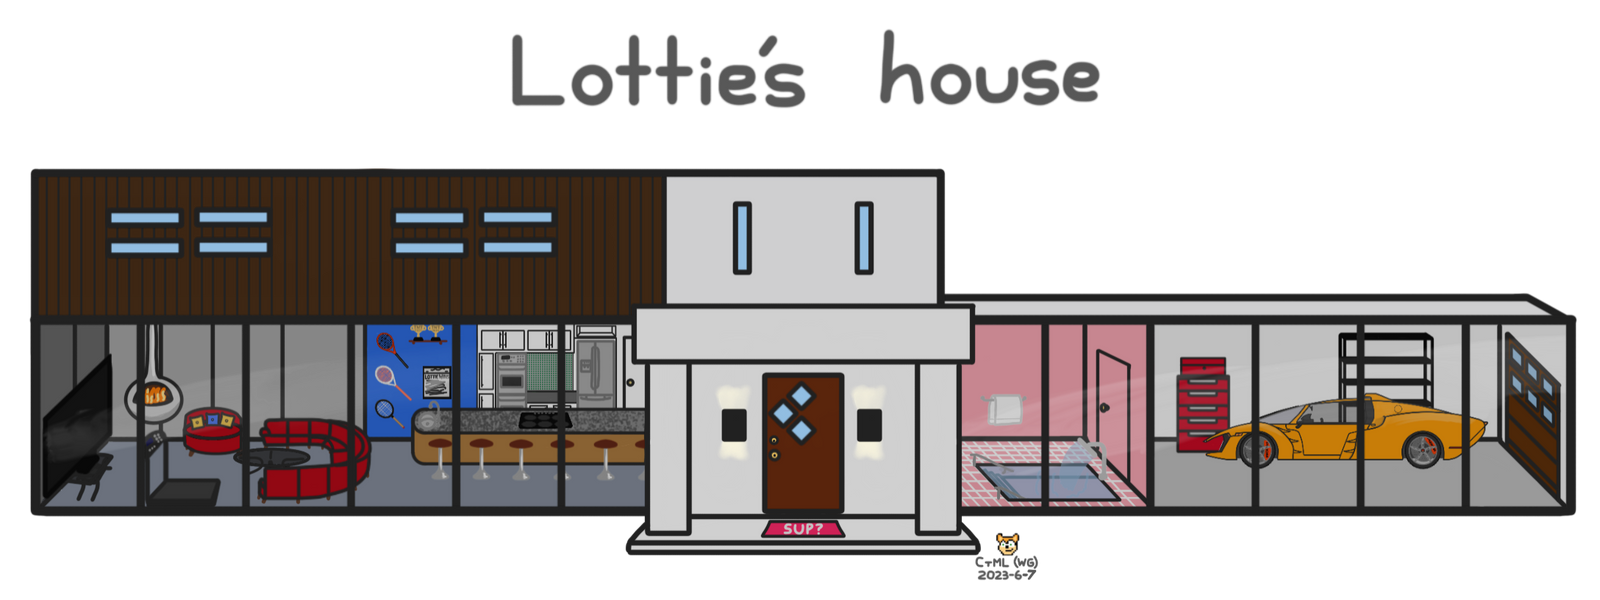 lottie_s_house_by_cometthemountainlion_d